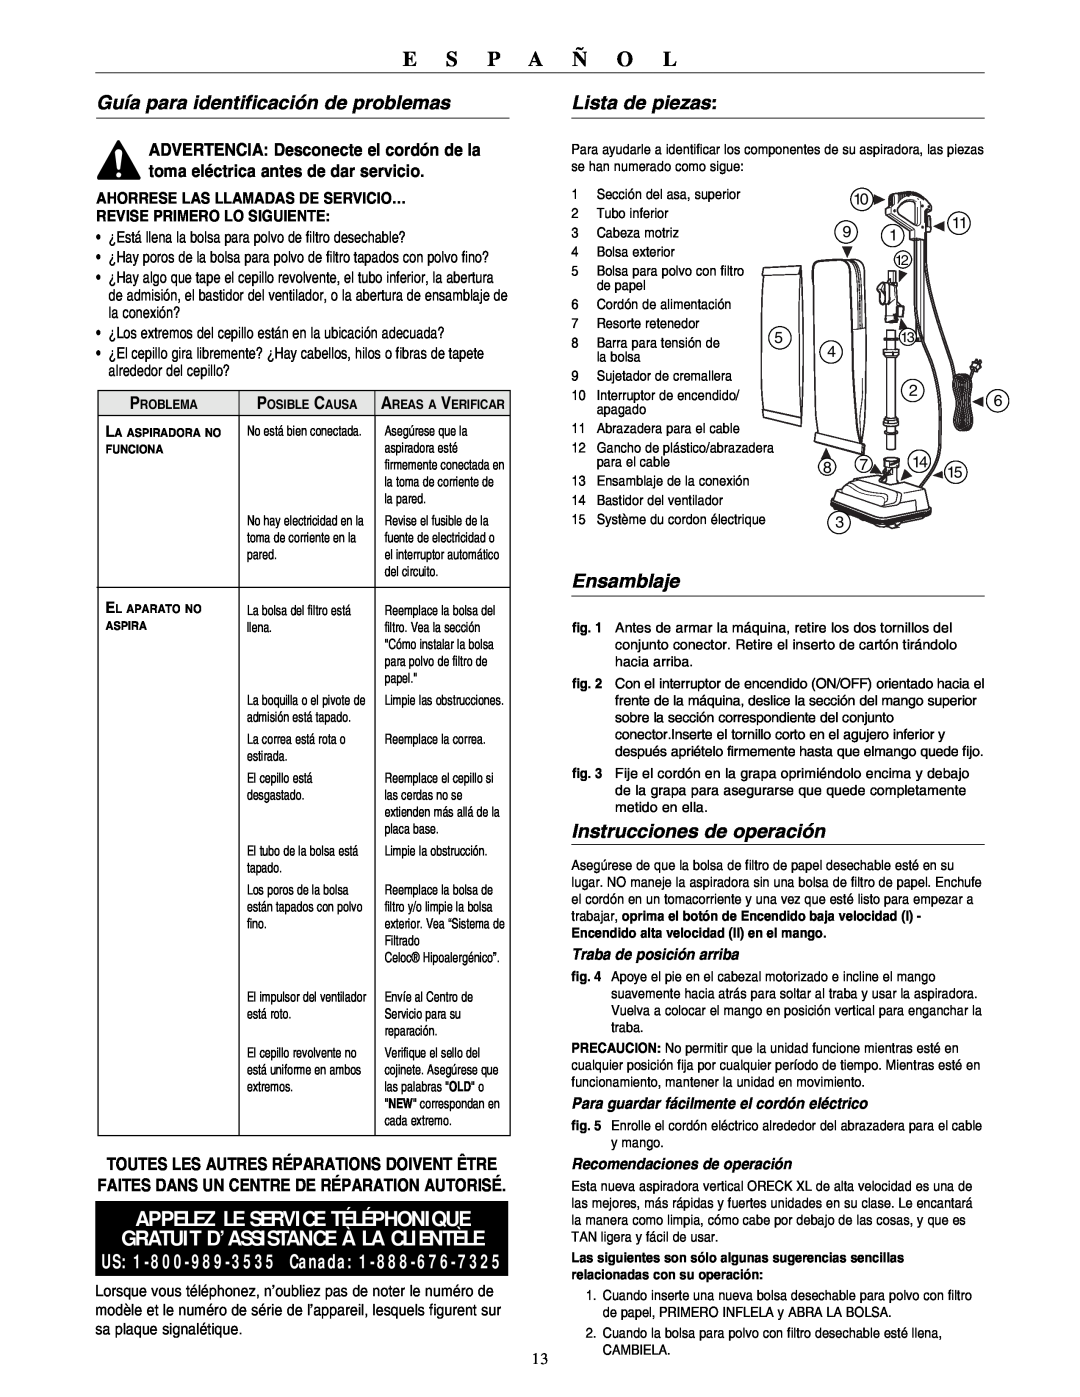 Oreck U4140HH warranty Guía para identificación de problemas, Lista de piezas, Ensamblaje, Instrucciones de operación 